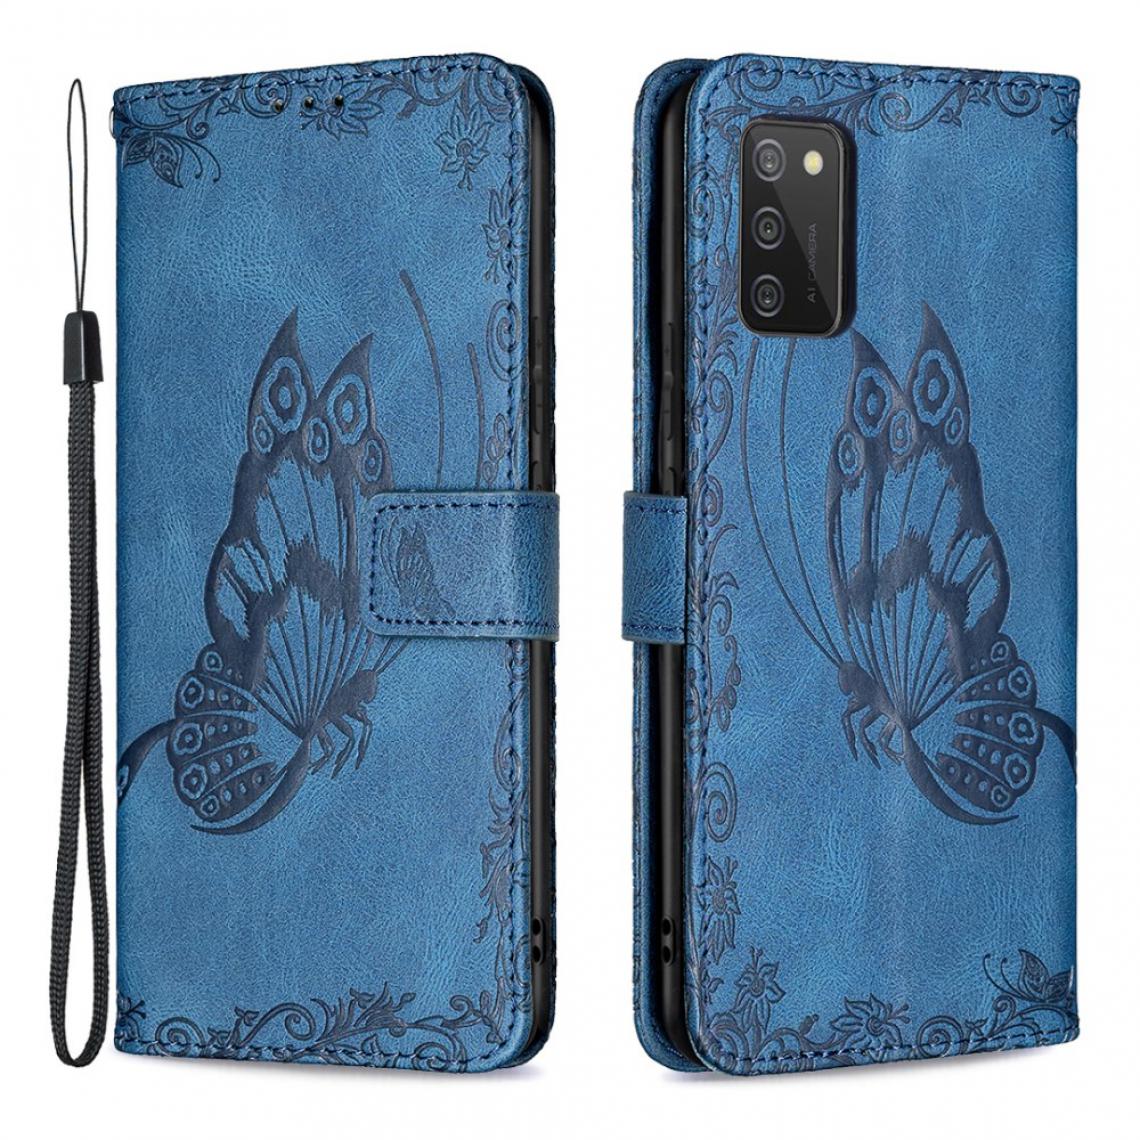 Other - Etui en PU Empreinte Fleur Papillon (164,2x75,9x9,1mm) avec support magnétique bleu pour votre Samsung Galaxy A02s - Coque, étui smartphone